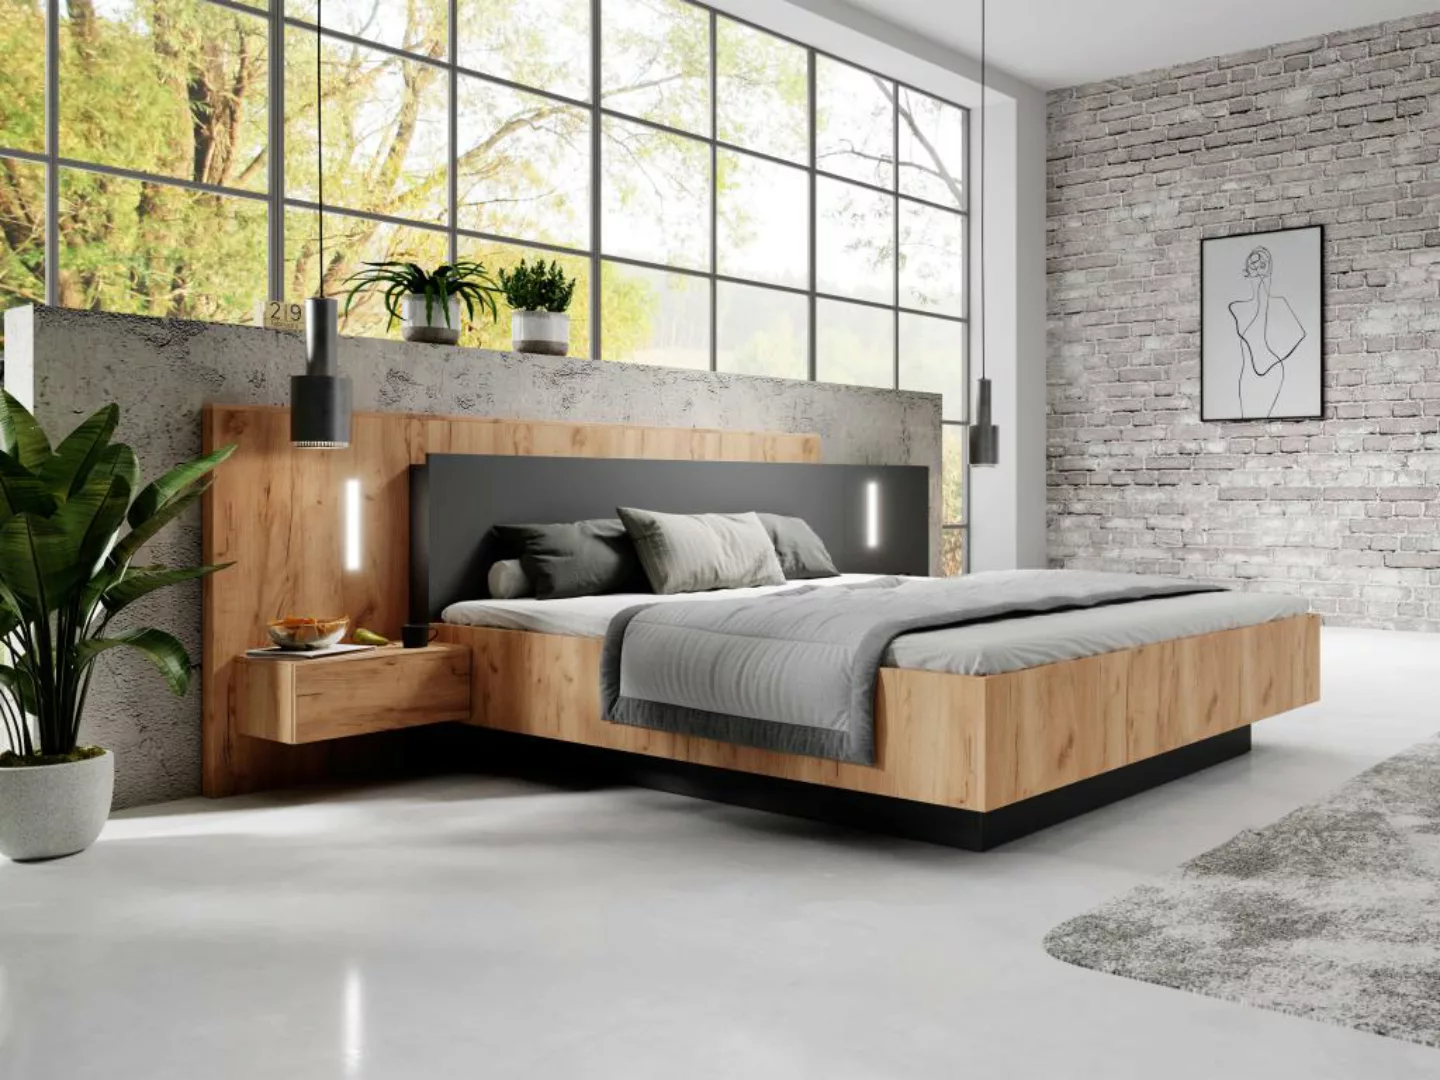 Bett mit integrierten Nachttischen - 160 x 200 cm - 2 Schubladen + LEDs - N günstig online kaufen